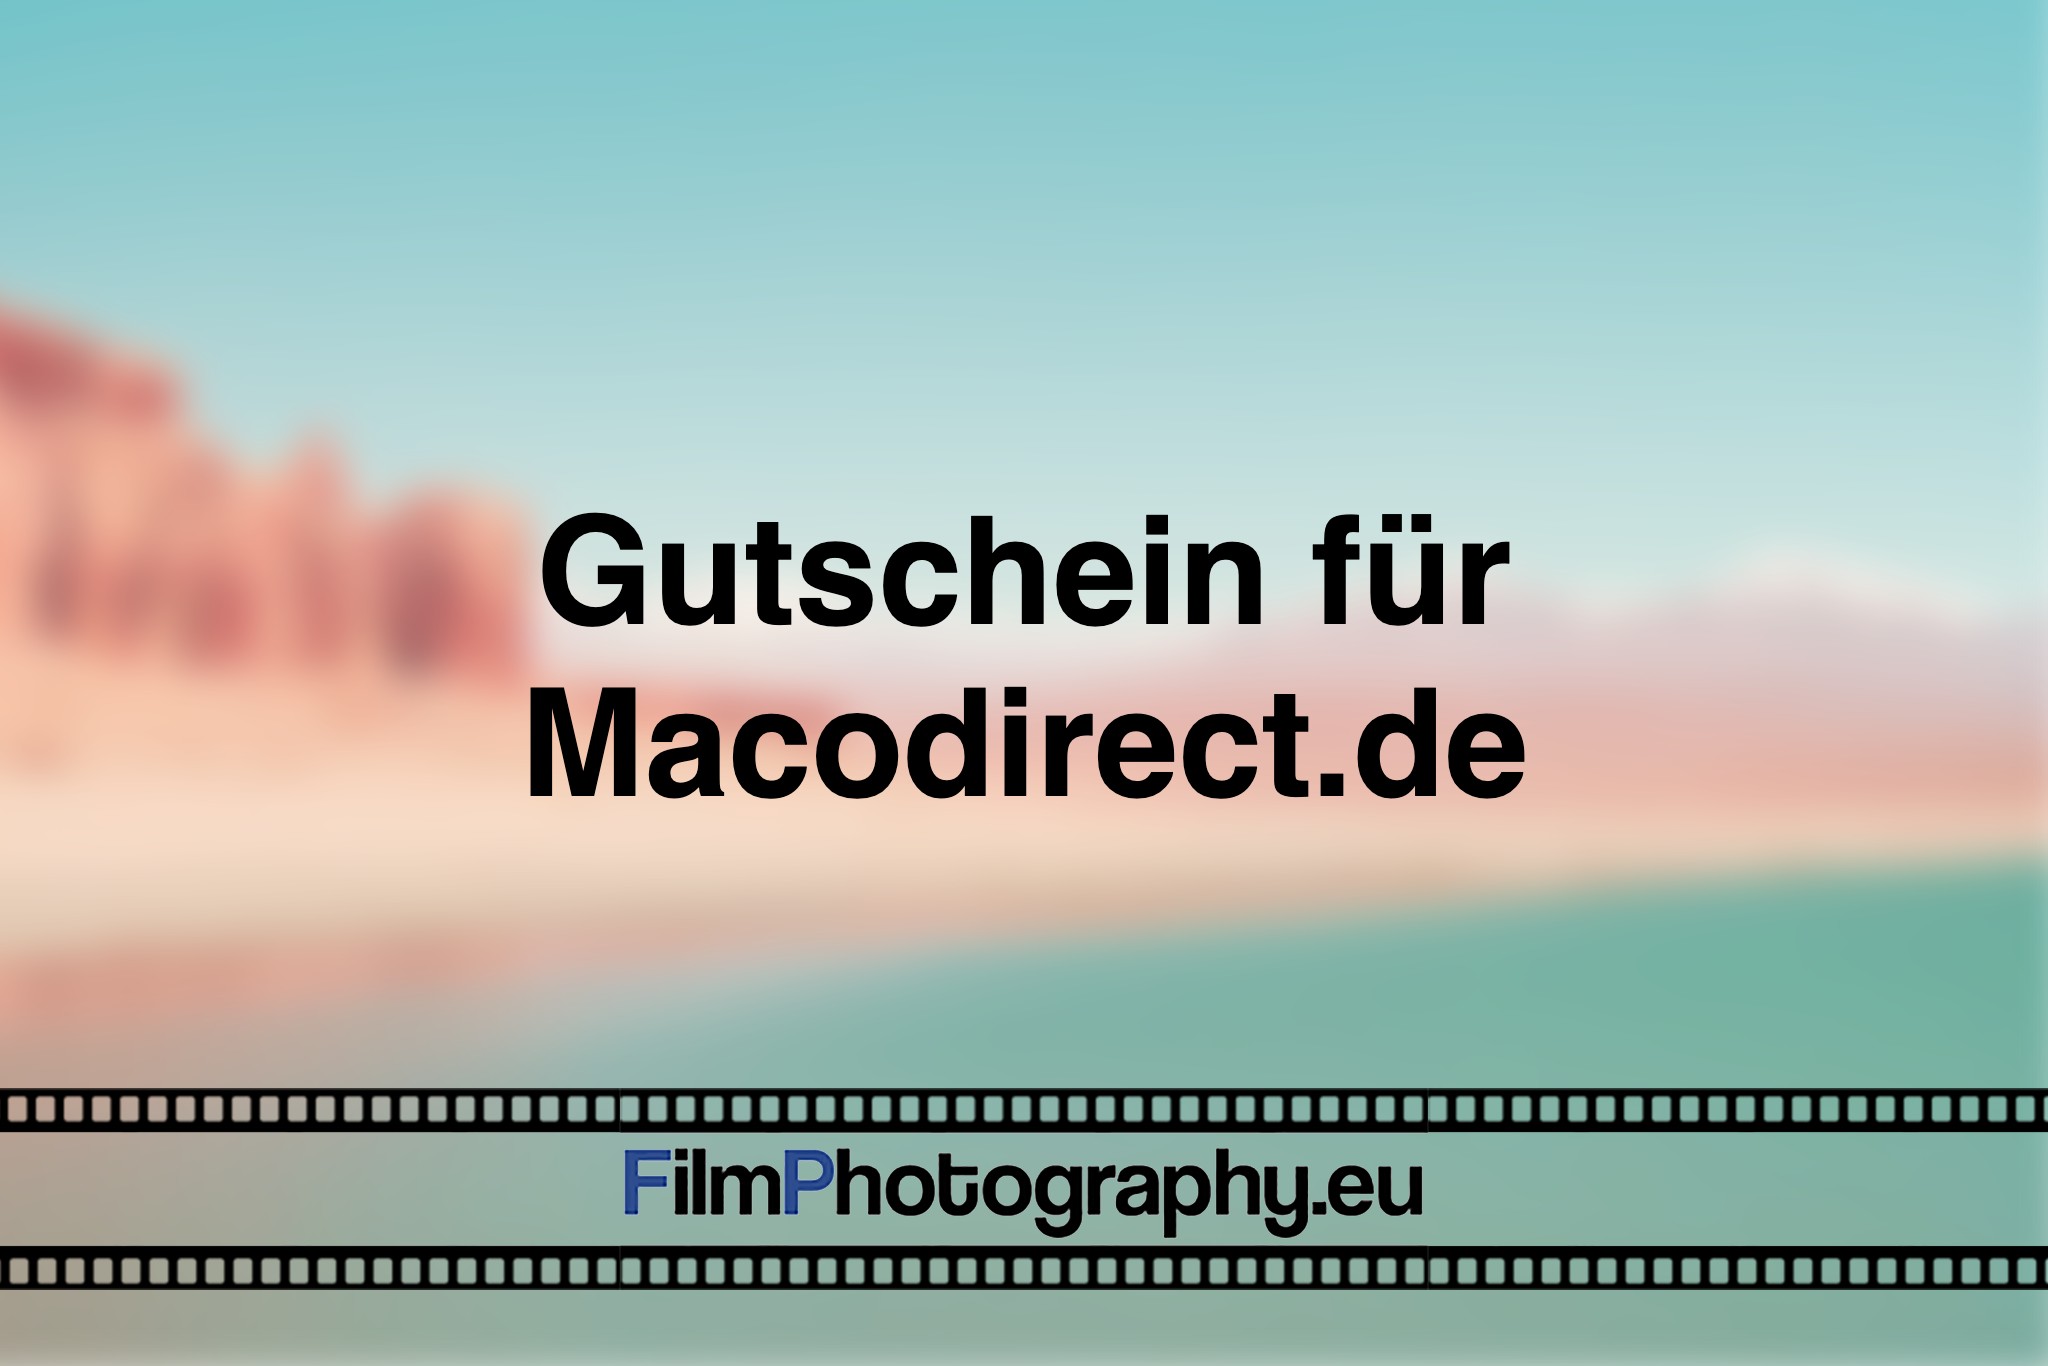 gutschein-fuer-macodirect-de-photo-bnv